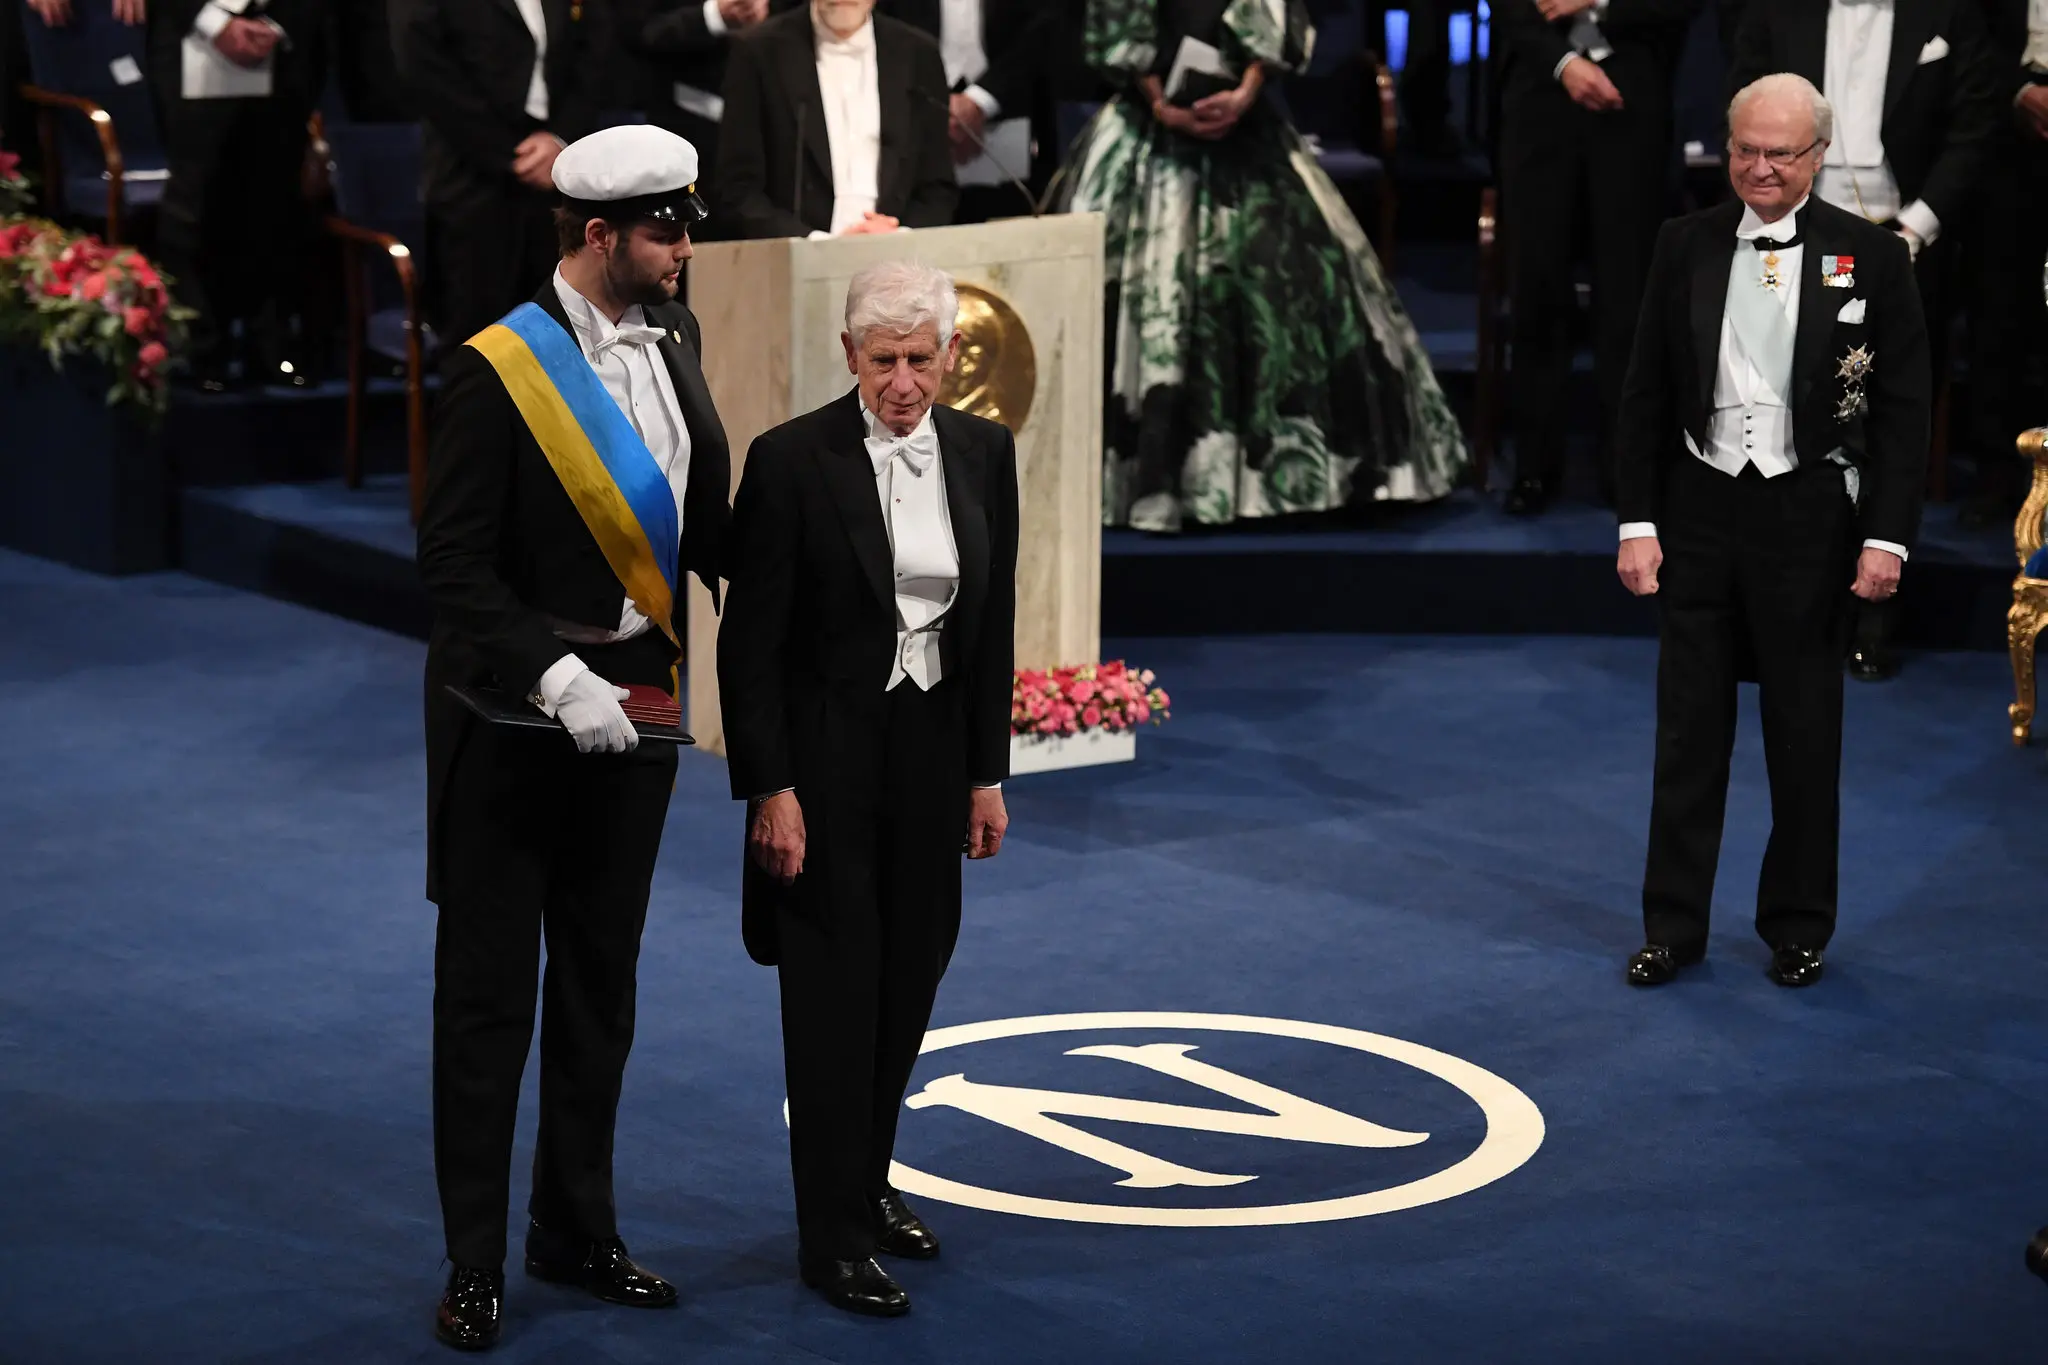 Dr. David Thouless após receber seu Prêmio Nobel do Rei Carl XVI Gustaf da Suécia, à direita, em dezembro de 2016 em Estocolmo. Ele o compartilhou com dois outros físicos para um trabalho que foi descrito como “transformacional” no estudo da matéria. (Crédito da fotografia: Cortesia Pascal Le Segretain/Getty Images)